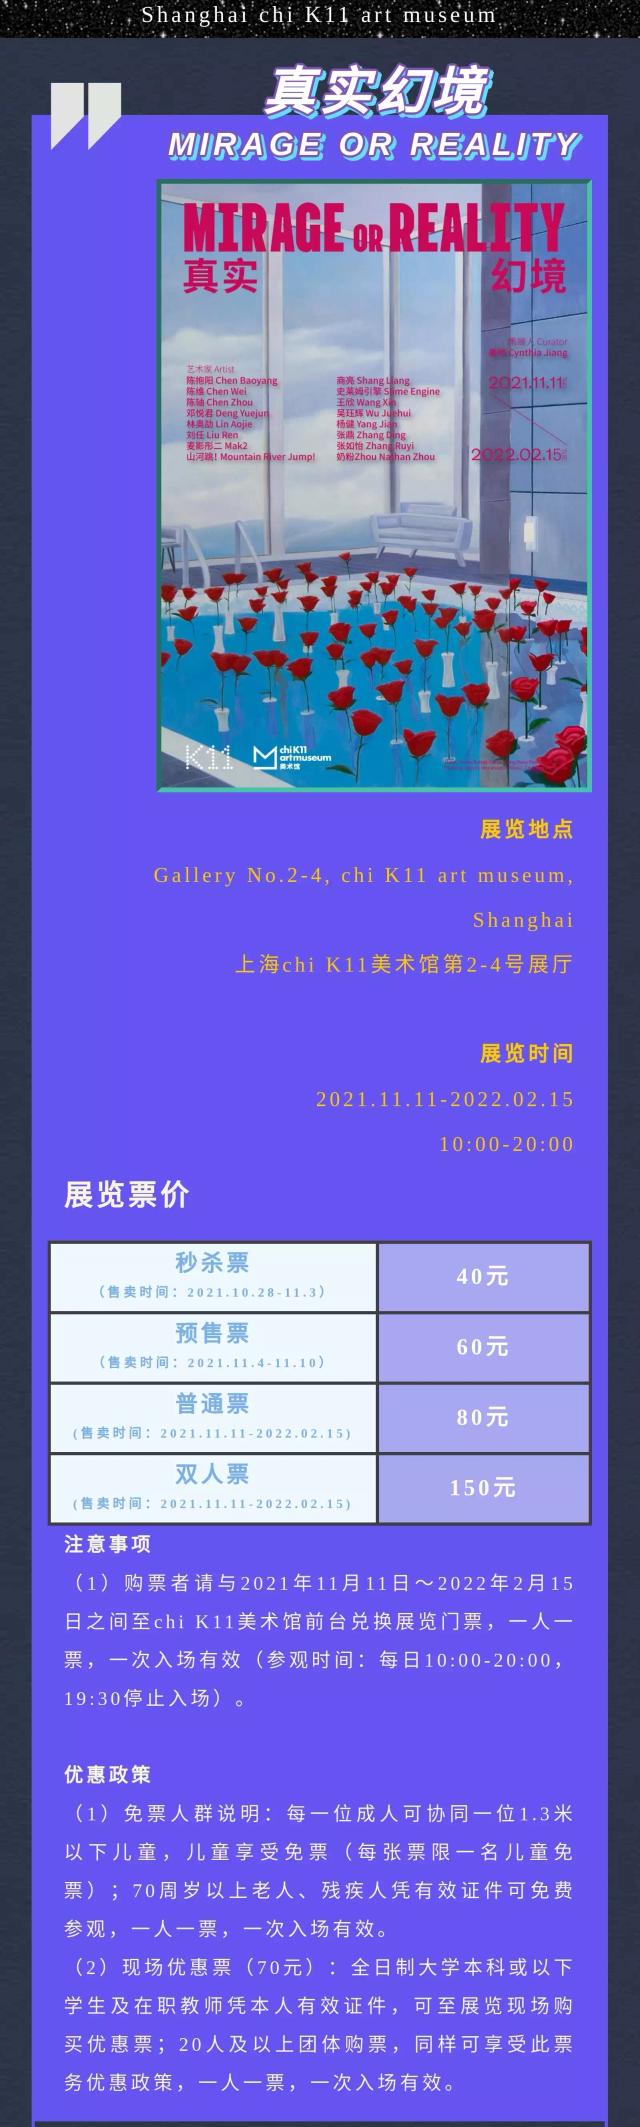 上海真实幻境展时间地点、展览介绍